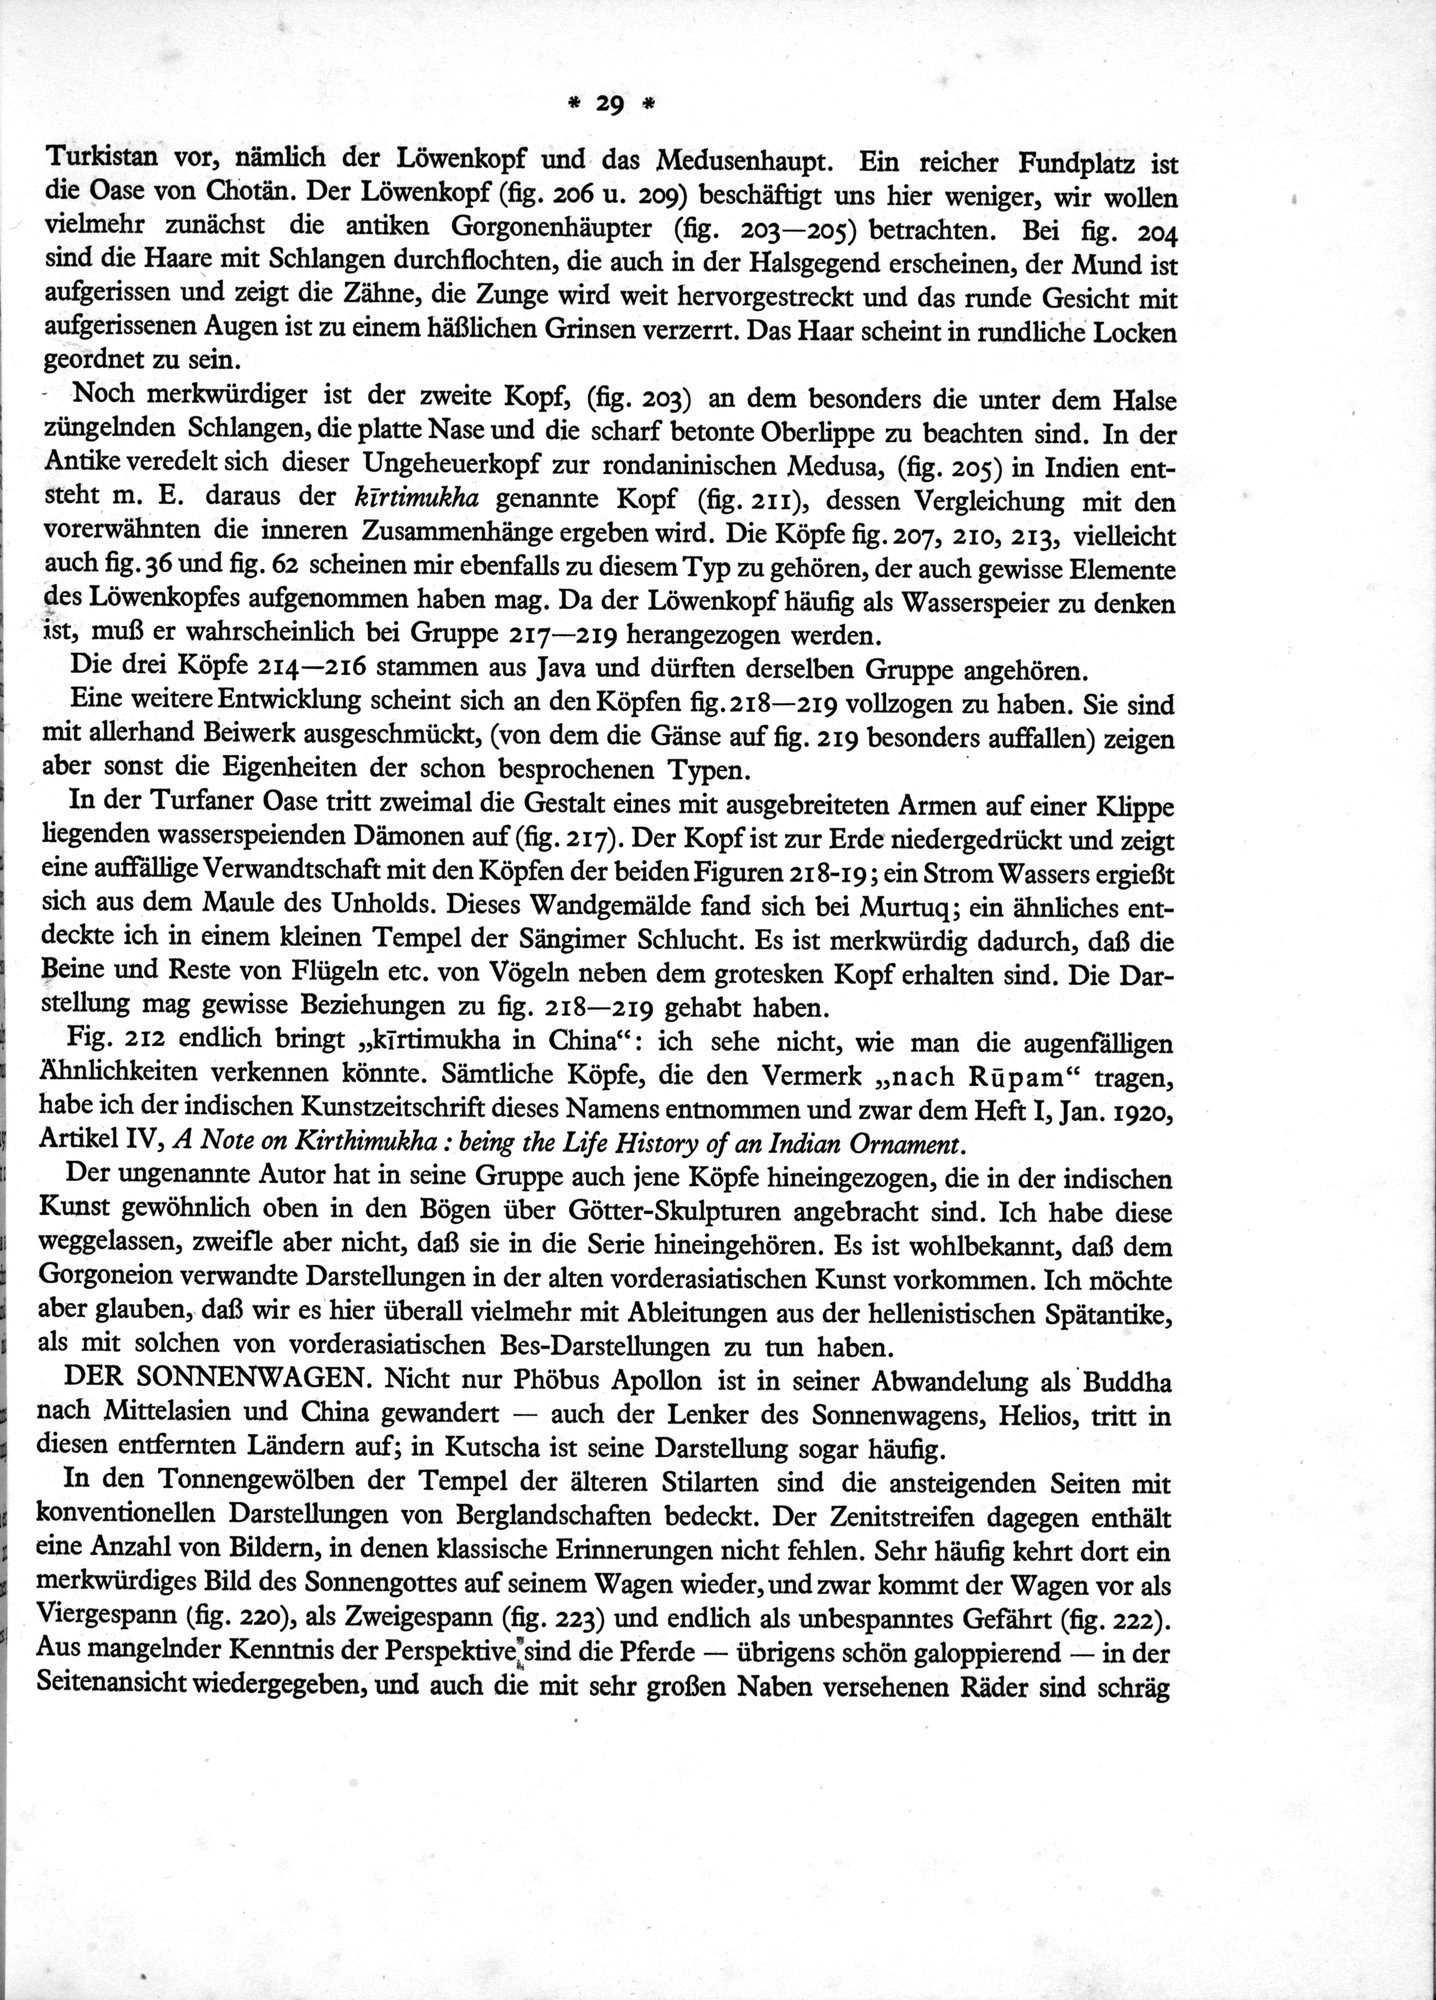 Bilderatlas zur Kunst und Kulturgeschichte Mittel-Asiens : vol.1 / Page 33 (Grayscale High Resolution Image)